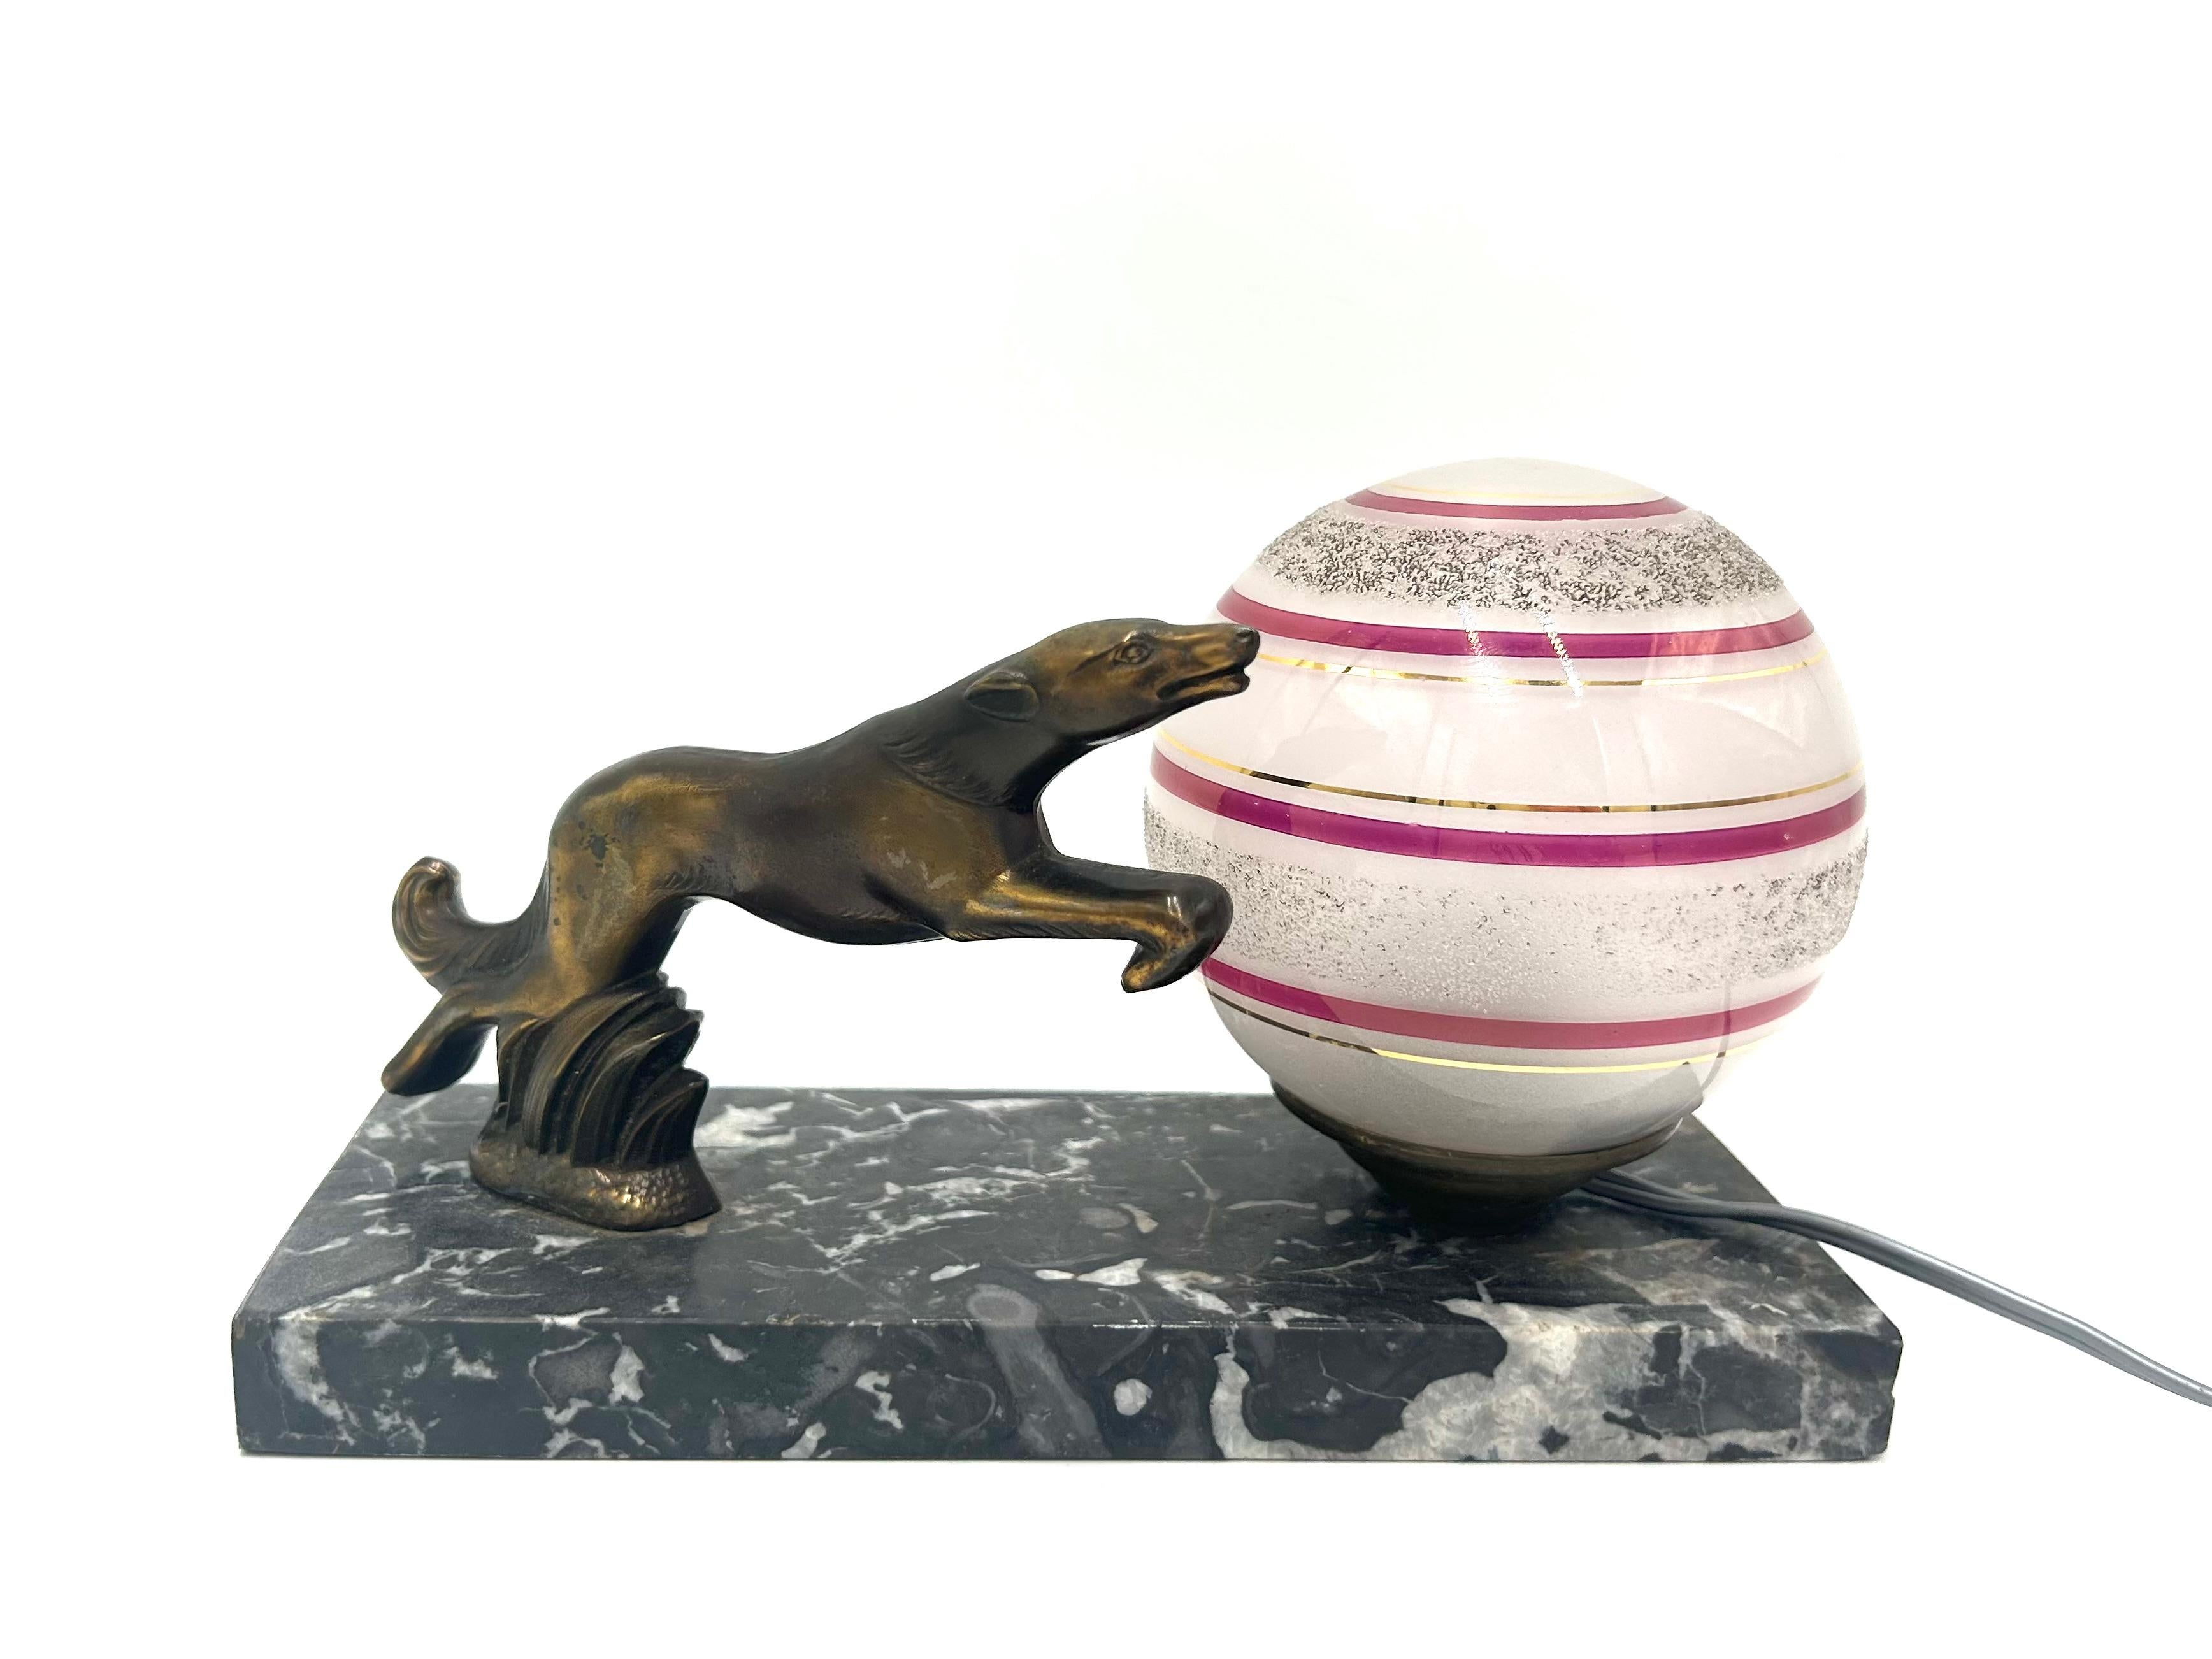 Lampe de table Art Déco. Il se compose d'un socle en marbre, d'un abat-jour en verre en forme de boule et d'une figure de chien courant (lévrier). Ampoule de type B22 - plus petite taille. Une pièce est incluse dans le set. La lampe a été fabriquée